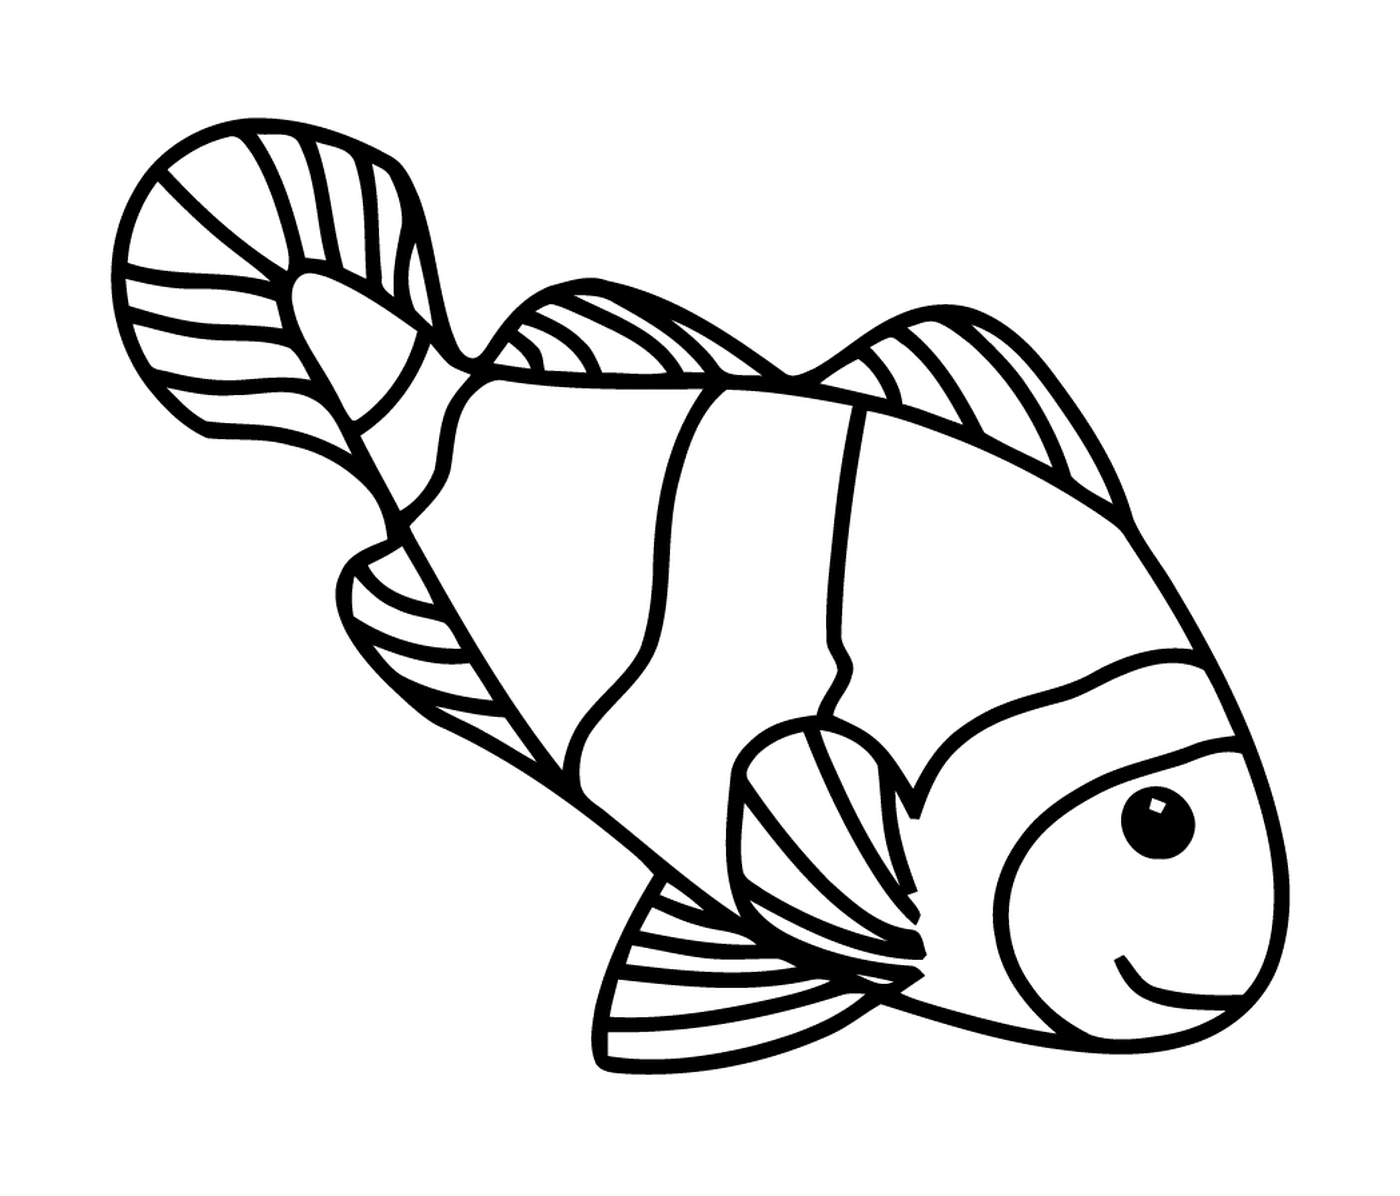  Presencia de un pez 